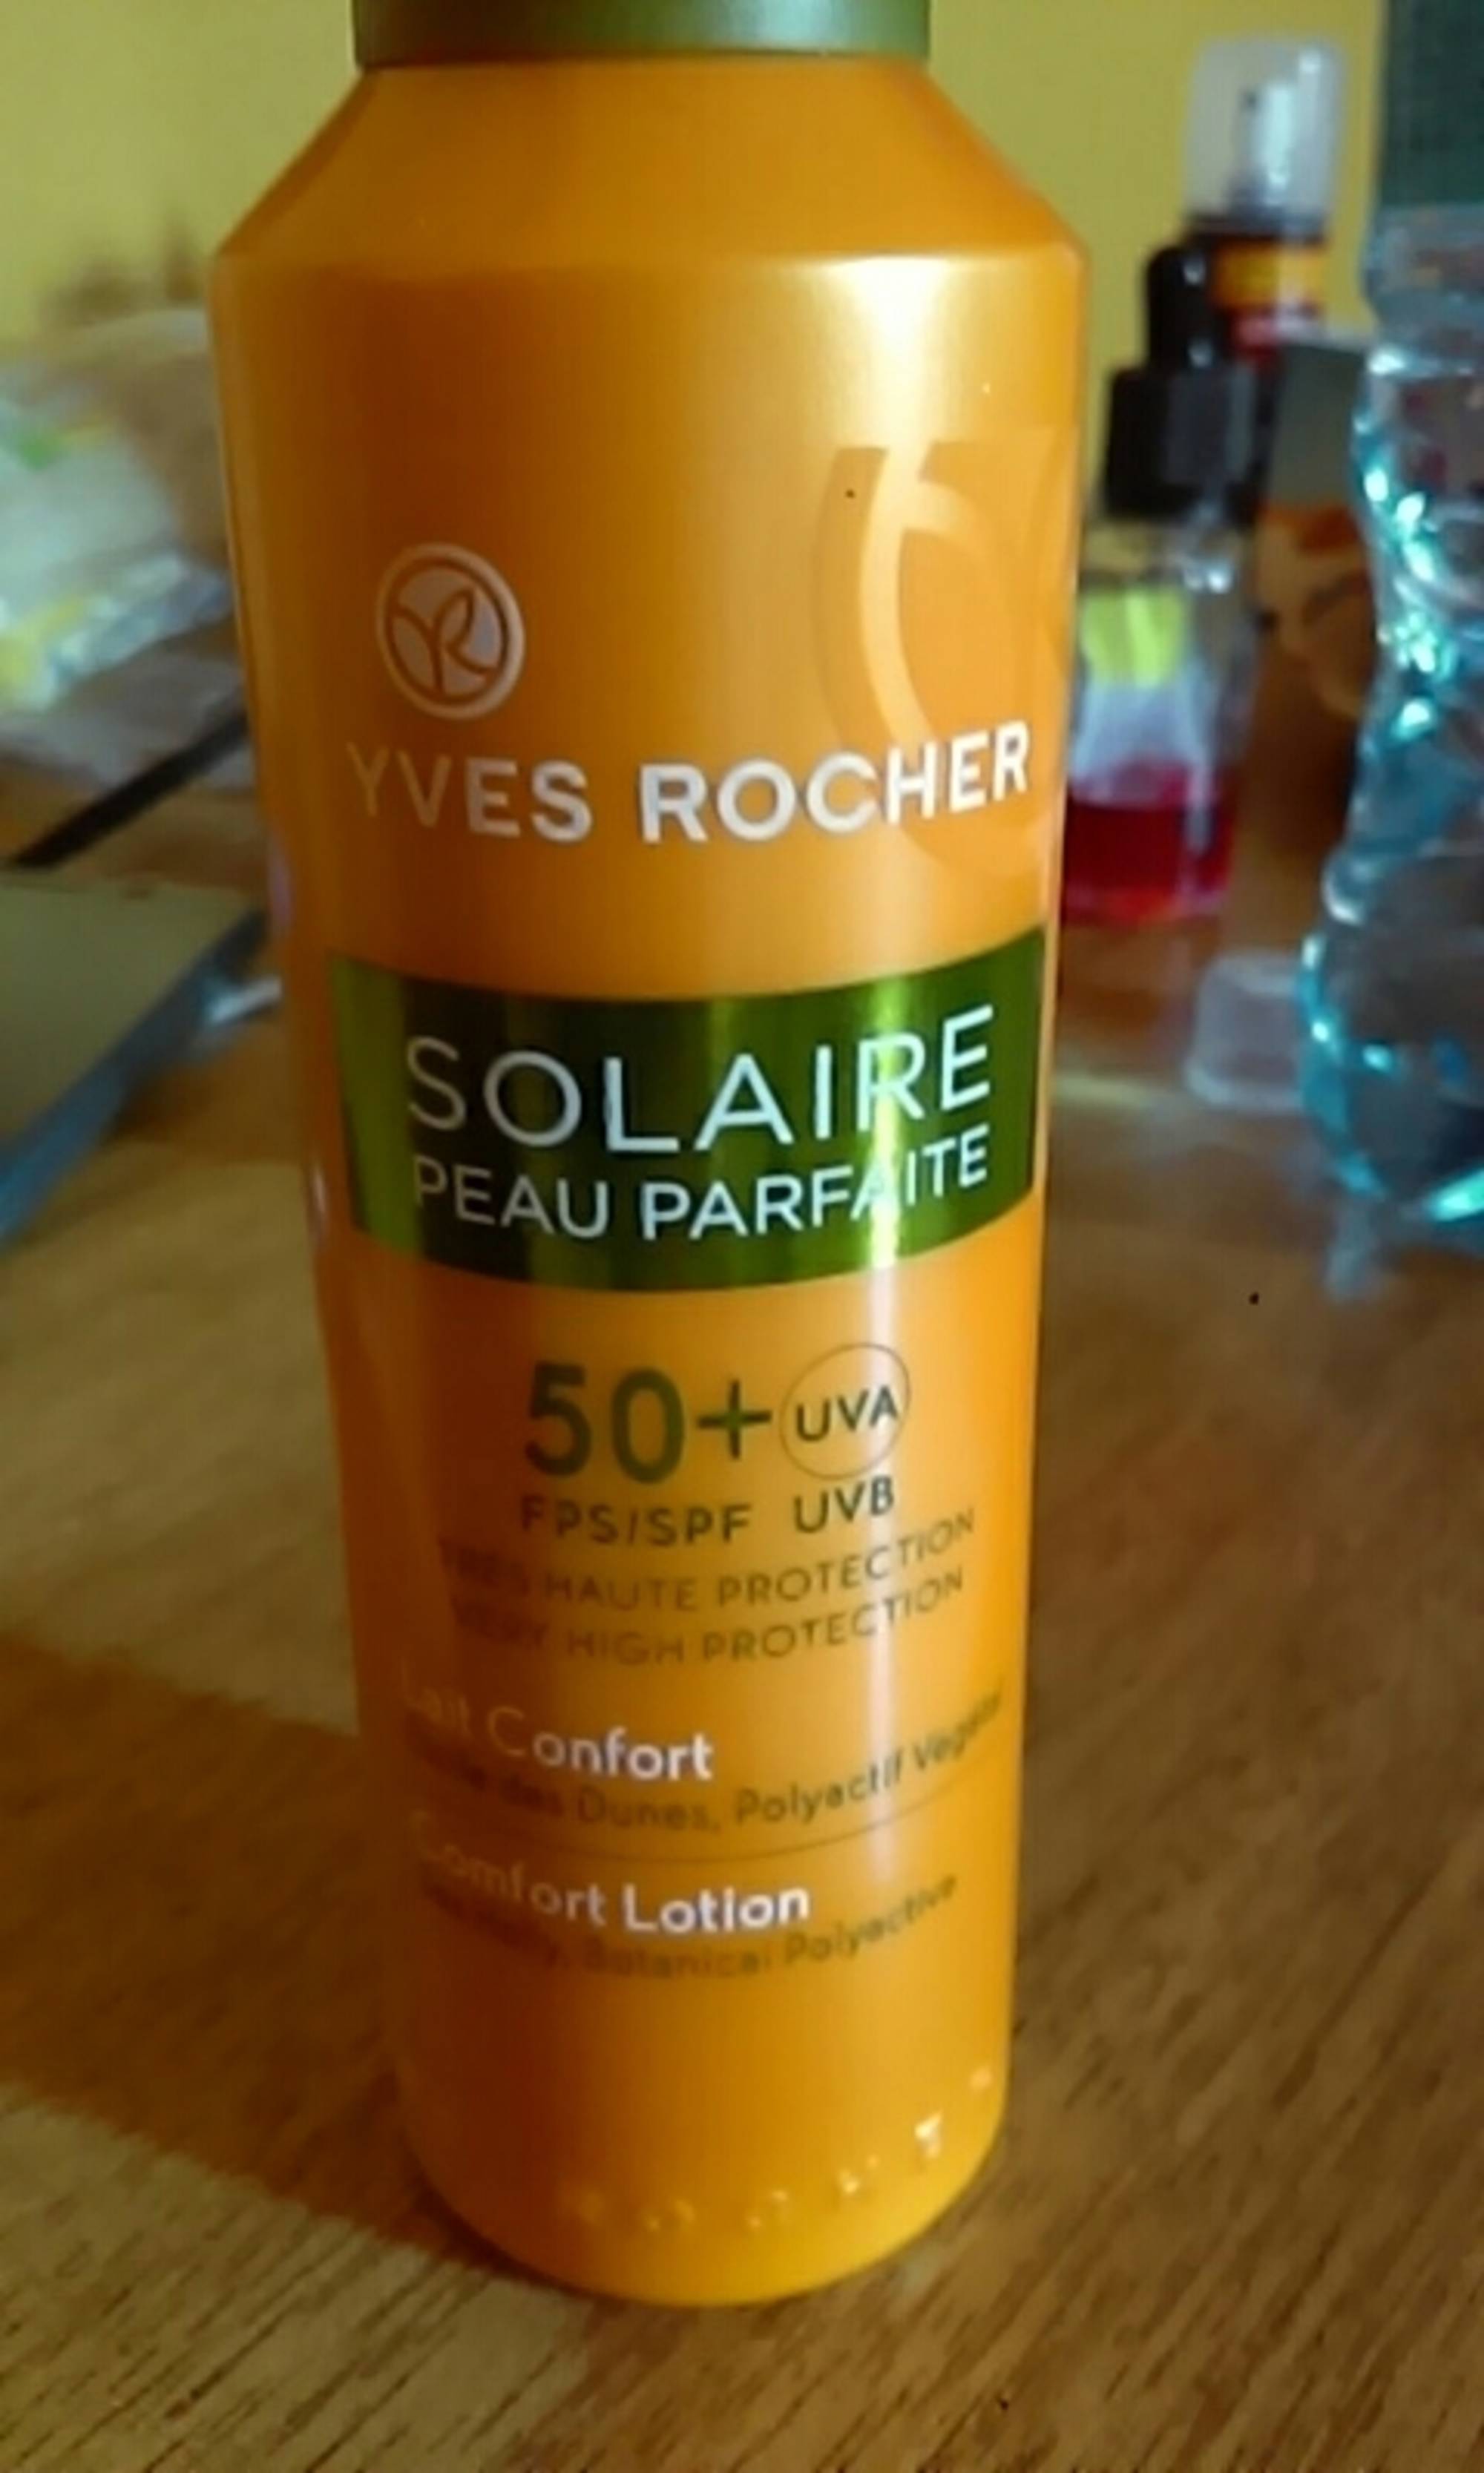 YVES ROCHER - Solaire peau parfaite - 50+ lait confort